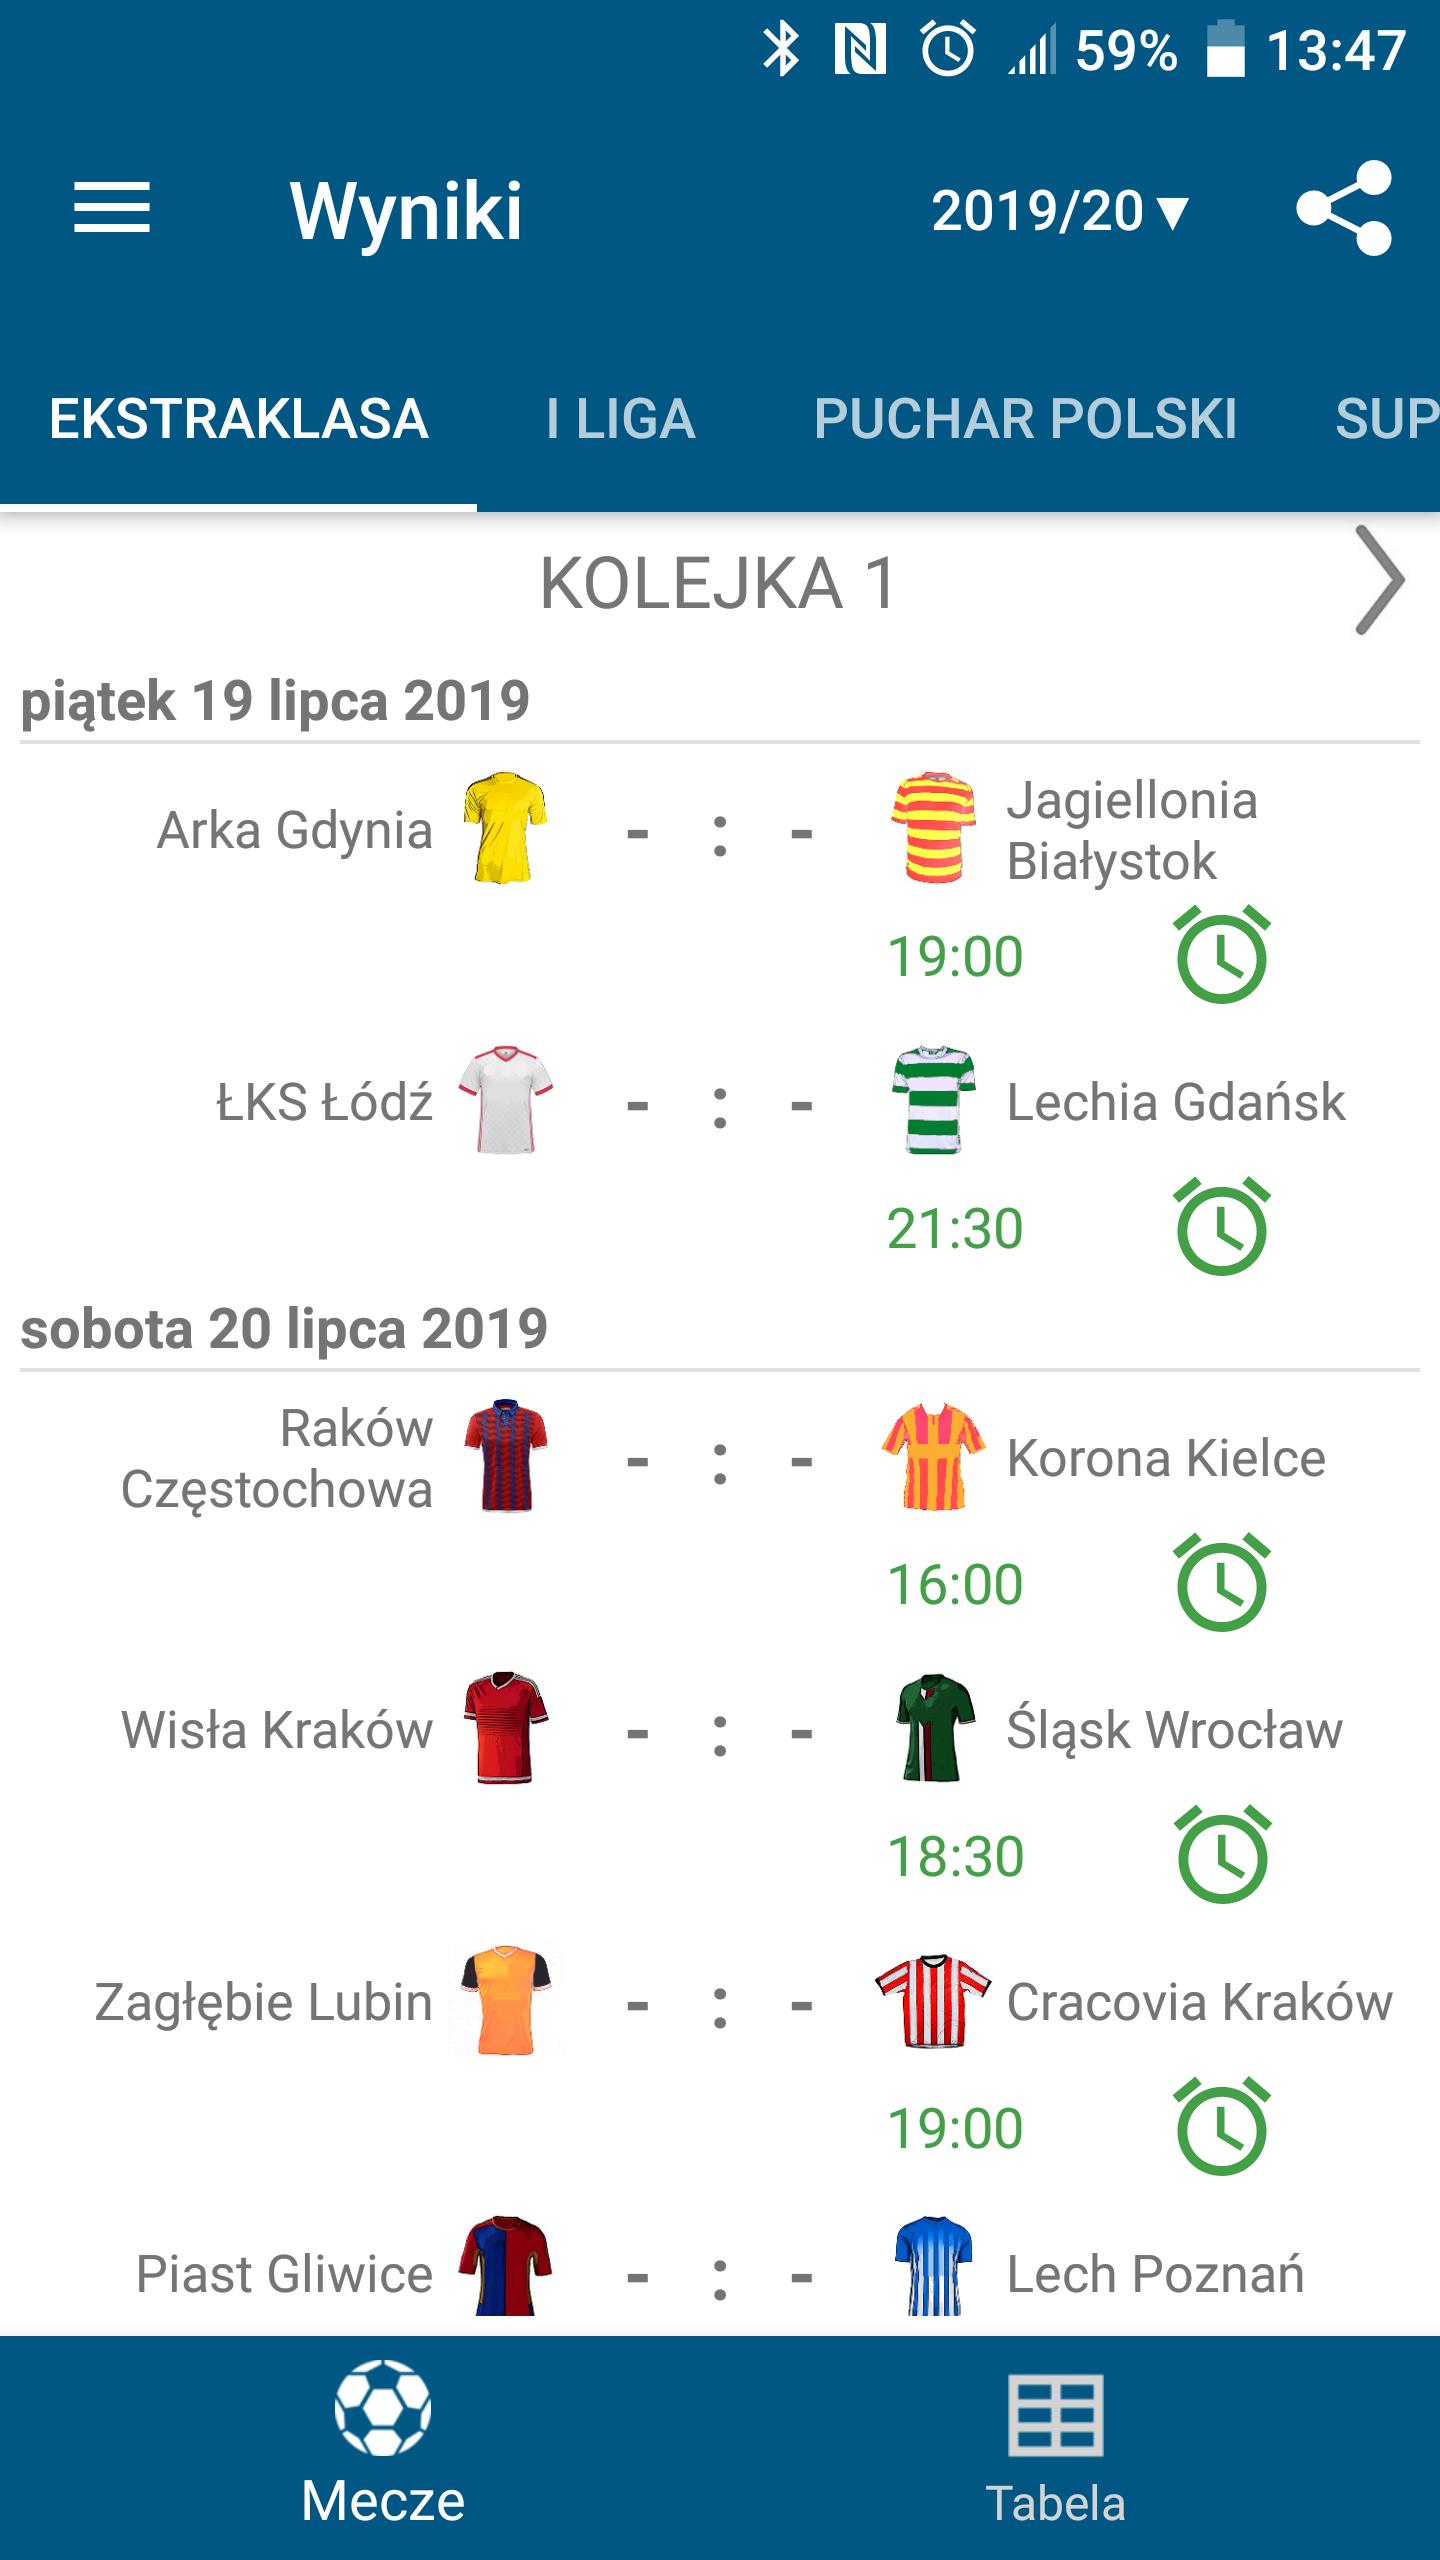 Wyniki na żywo dla Ekstraklasy for Android - APK Download